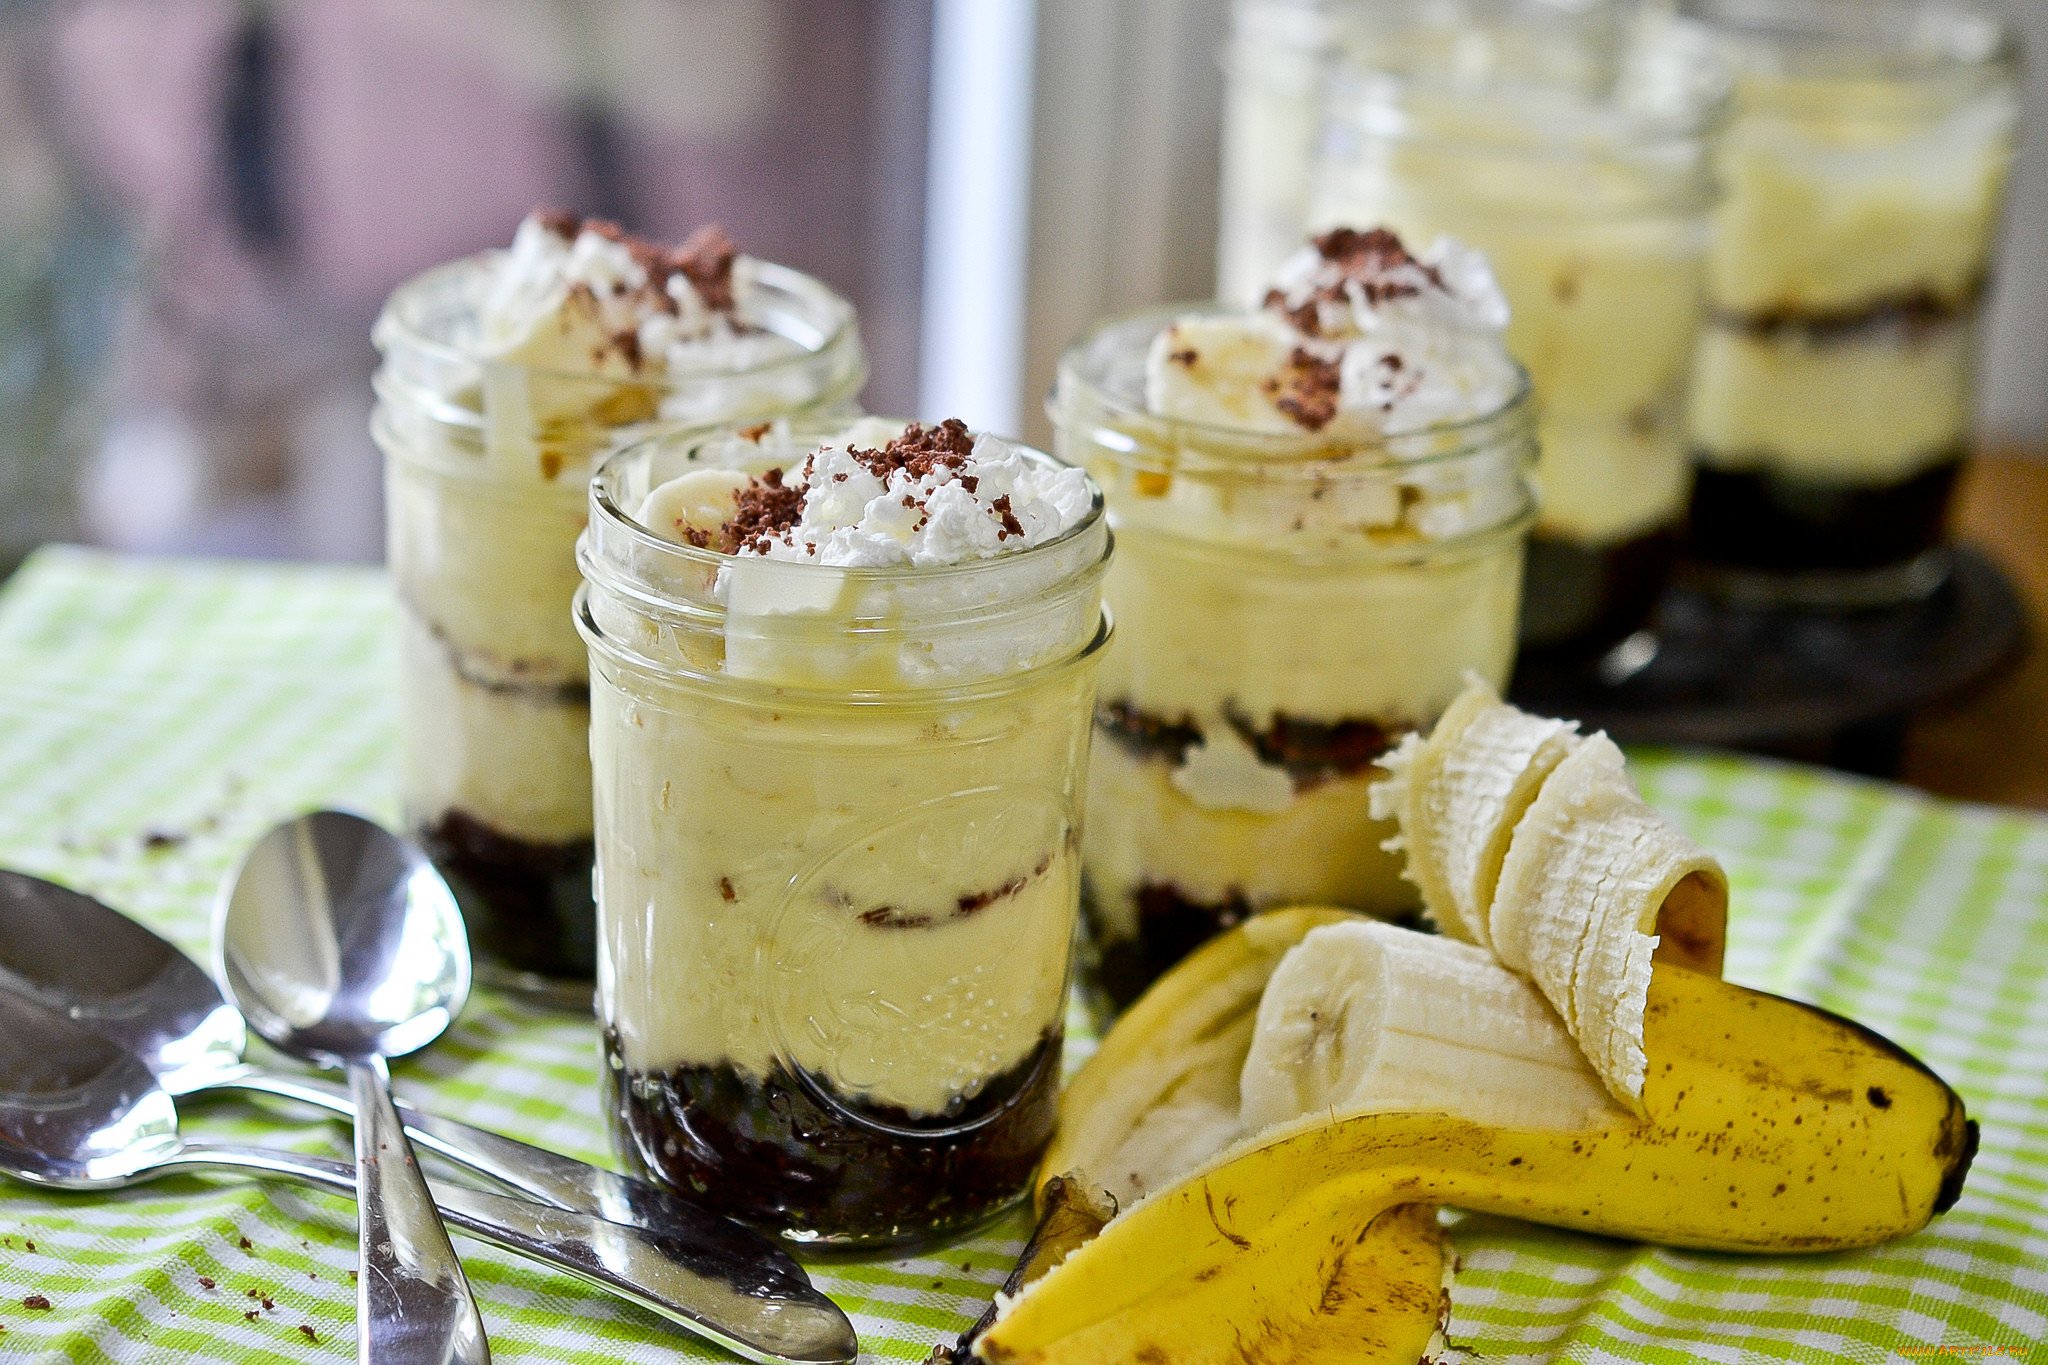 Банановый десерт без выпечки: рецепт, подготовка продуктов, порядок приготовления